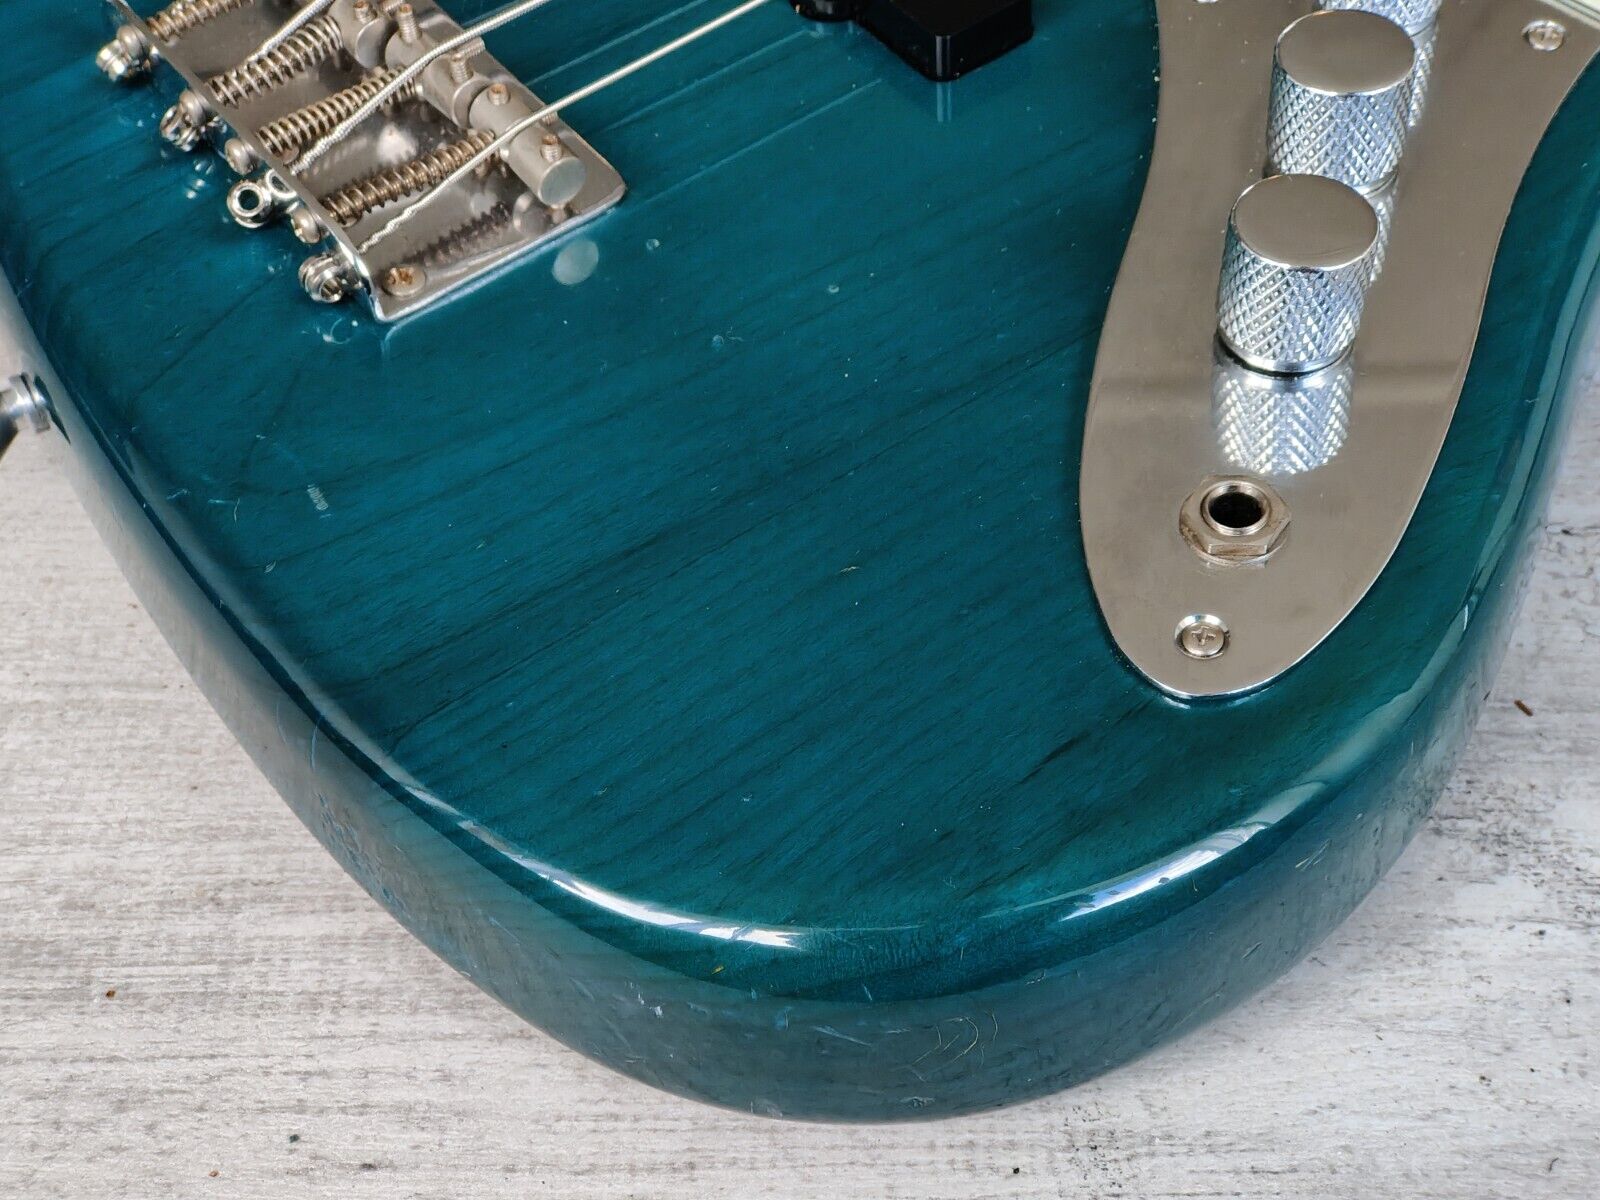 1999 Fender Japan (by Tokai) '62 Reissue Jazz Bass (Transparent Green)